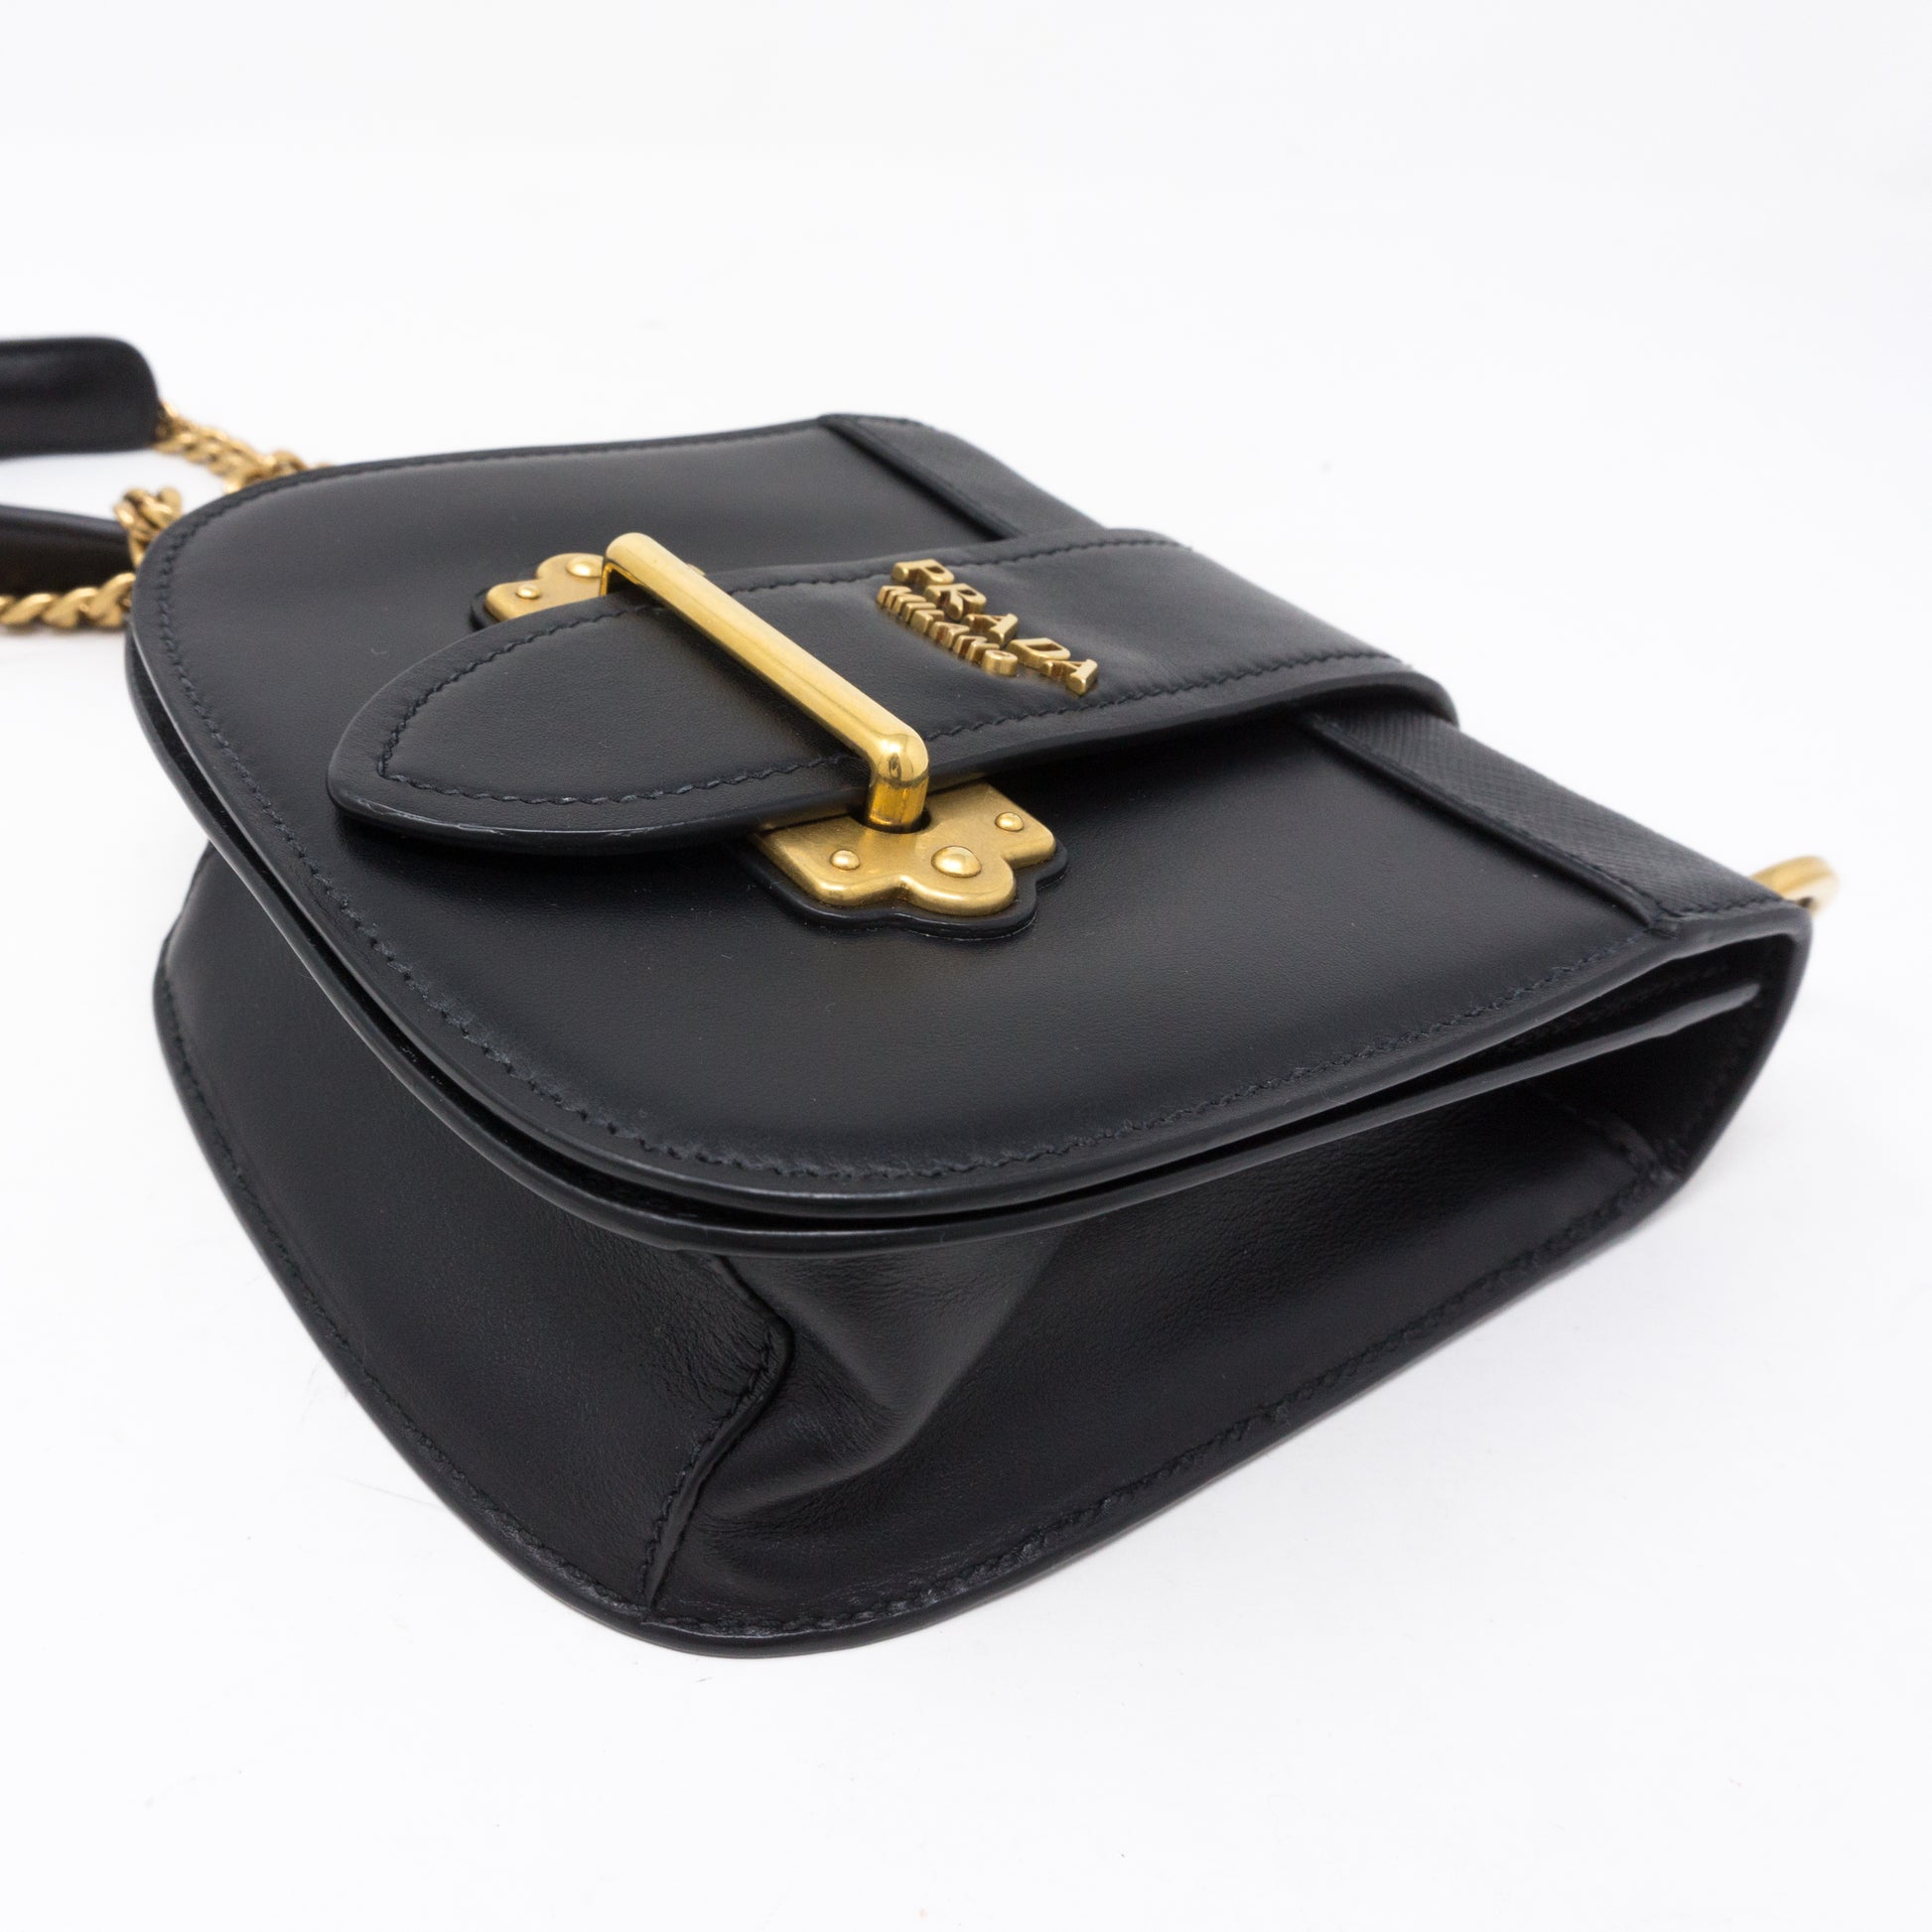 Prada Pionniere Leather Crossbody Bag In Black